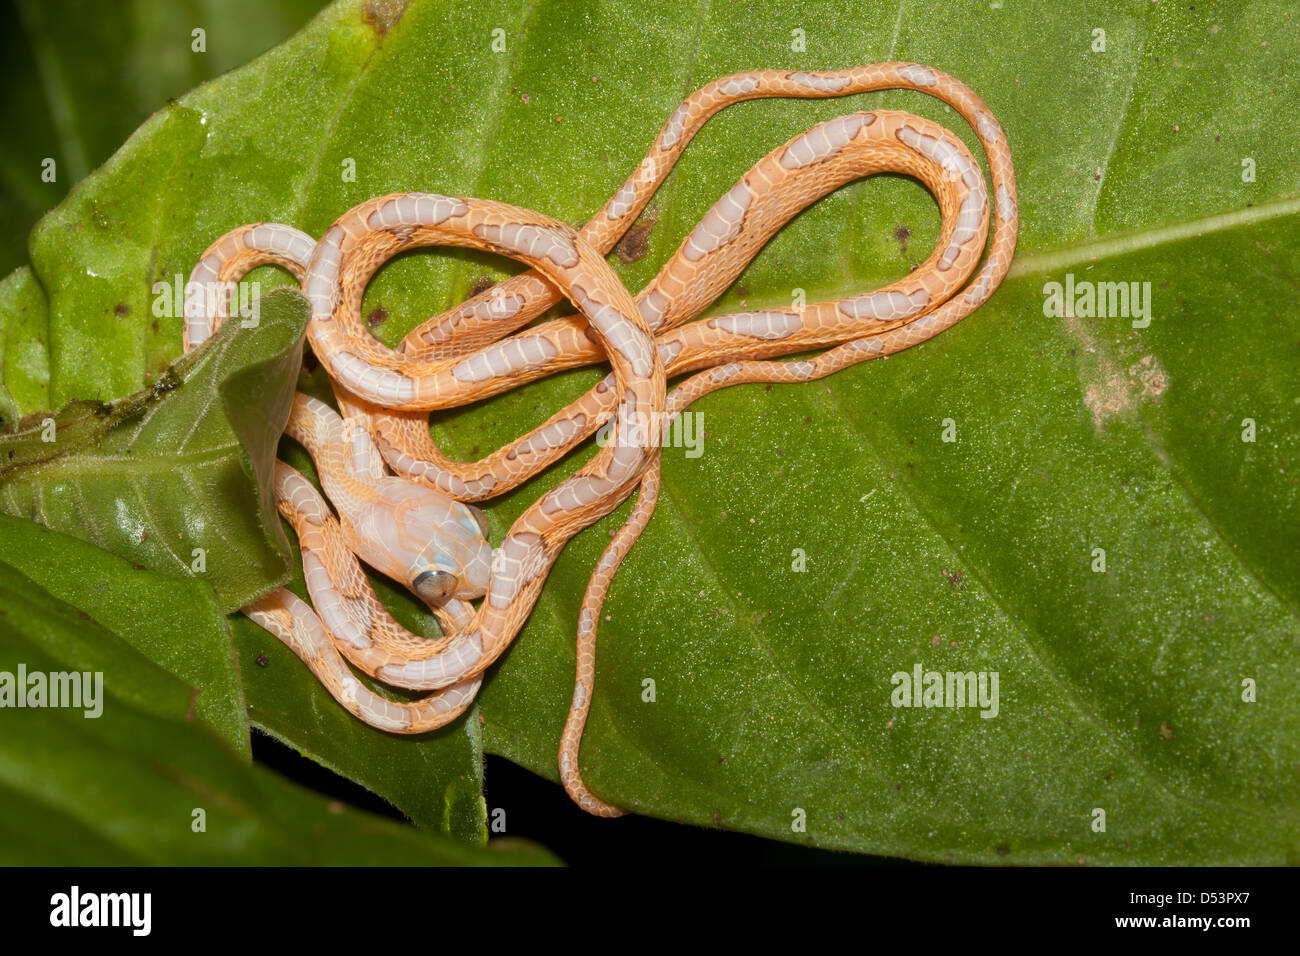 Panama fauna selvatica con un serpente che gioca morto, trovato su una foglia nella foresta pluviale della riserva naturale di Burbayar, provincia di Panama, Repubblica di Panama. Foto Stock